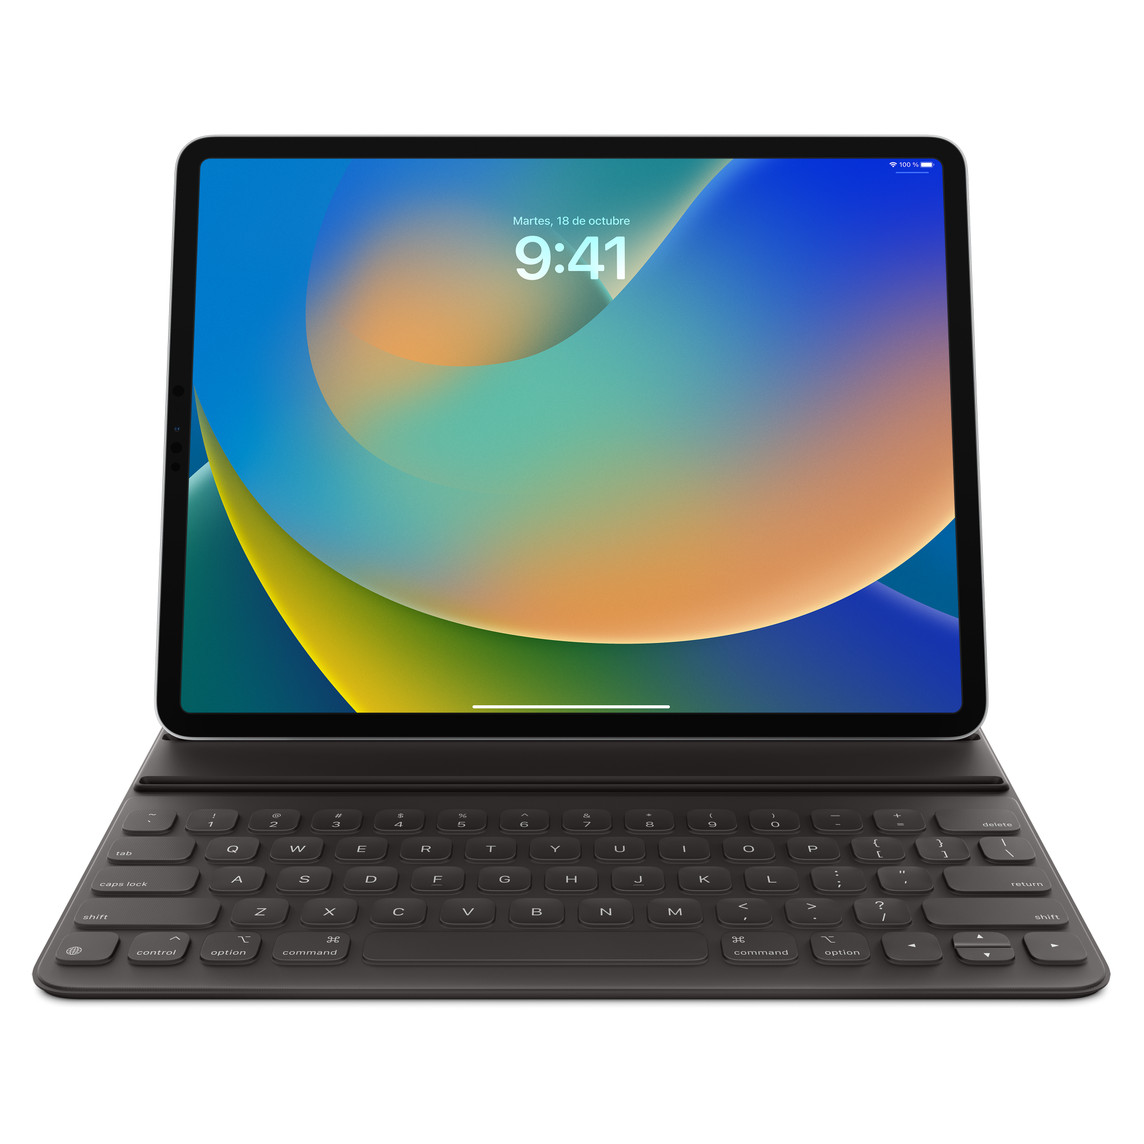 Smart Keyboard Folio negro para el iPad Pro de 12,9 pulgadas (quinta generación) acoplado a un iPad Pro.